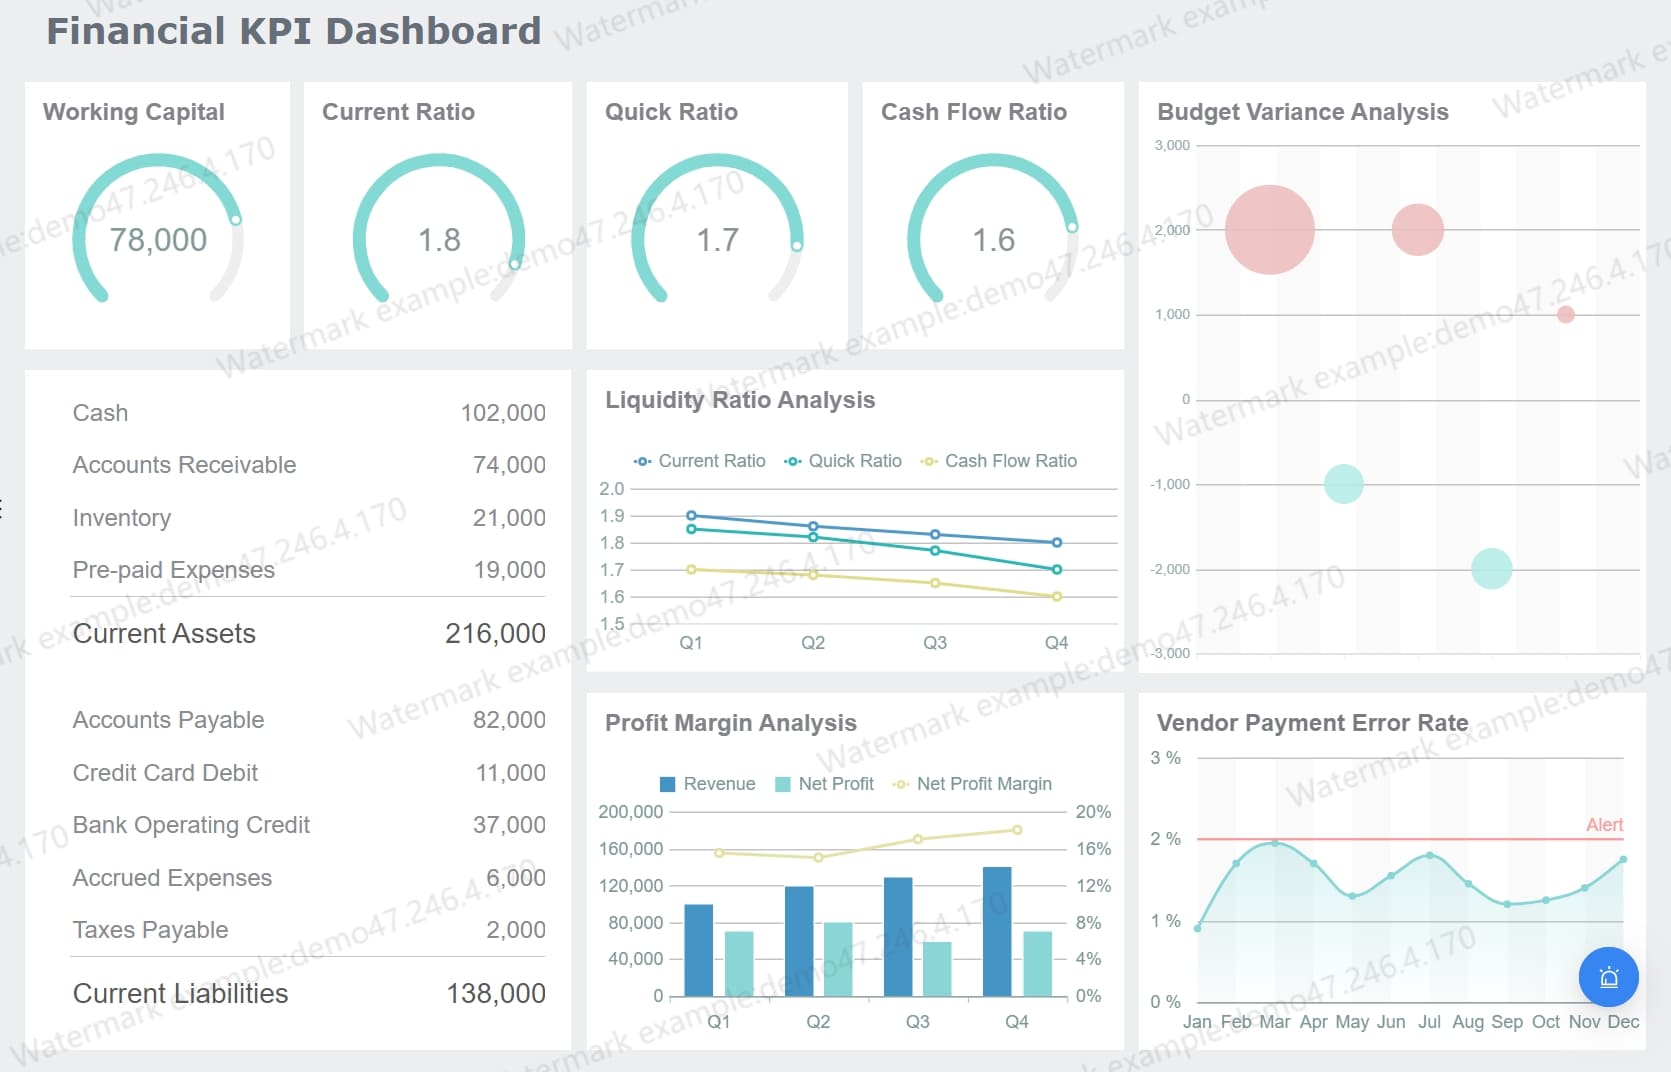 Financial KPI Dashboard.jpg